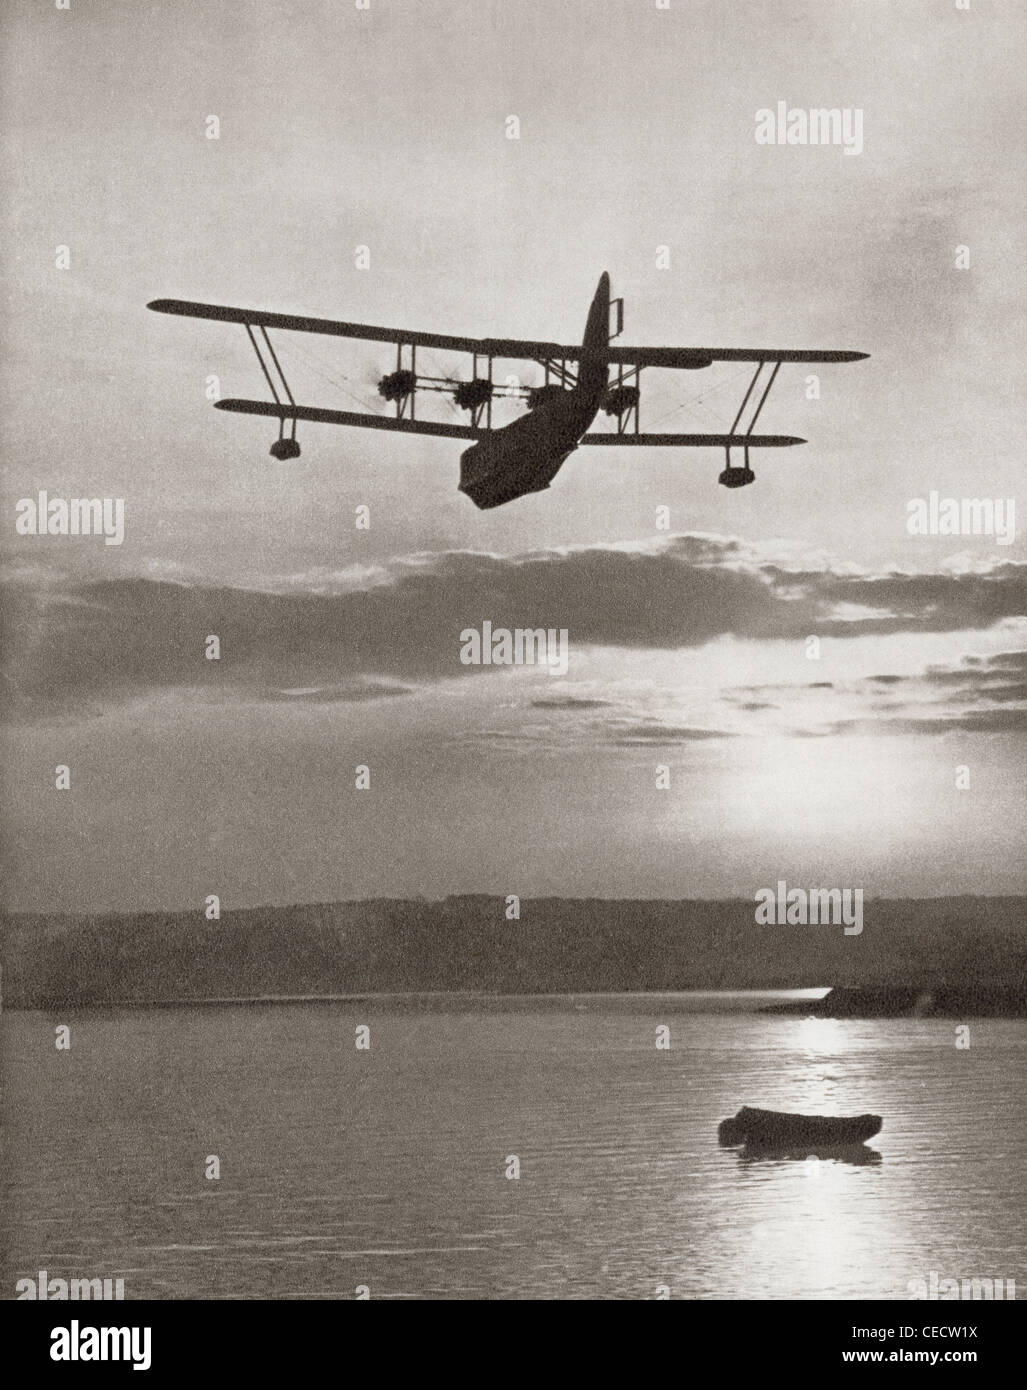 Un Imperial Airlines Scipione classe flying boat c.1931. Dalla storia di 25 anni densi di eventi in immagini, pubblicato 1935. Foto Stock